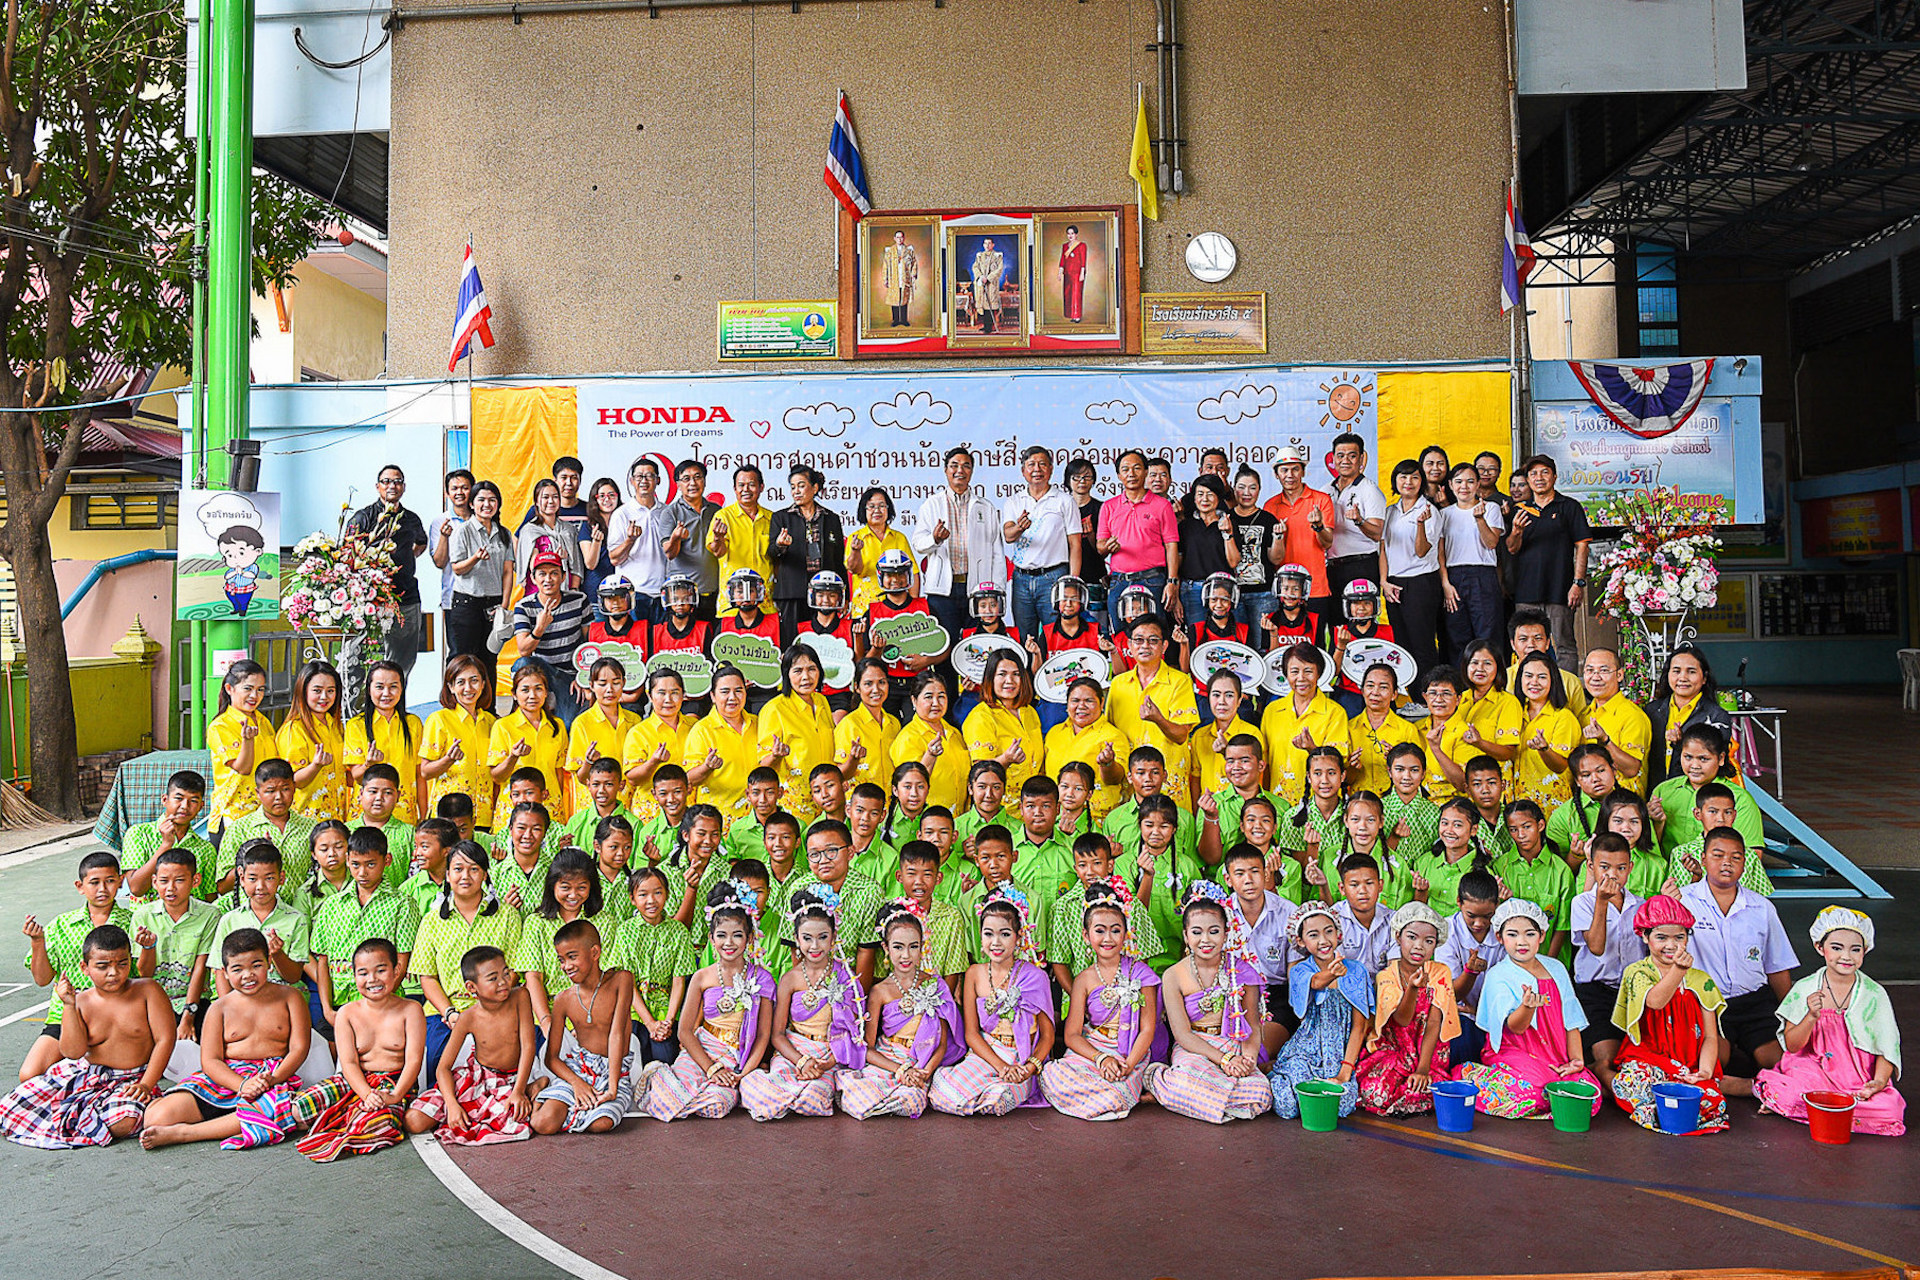 ฮอนด้า ต่อยอดภารกิจปลูกจิตสำนึกรักษ์สิ่งแวดล้อมและส่งเสริมความปลอดภัยให้เยาวชนไทย
ในโครงการ “โรงเรียนสร้างสรรค์สิ่งแวดล้อมและความปลอดภัยกับฮอนด้า”